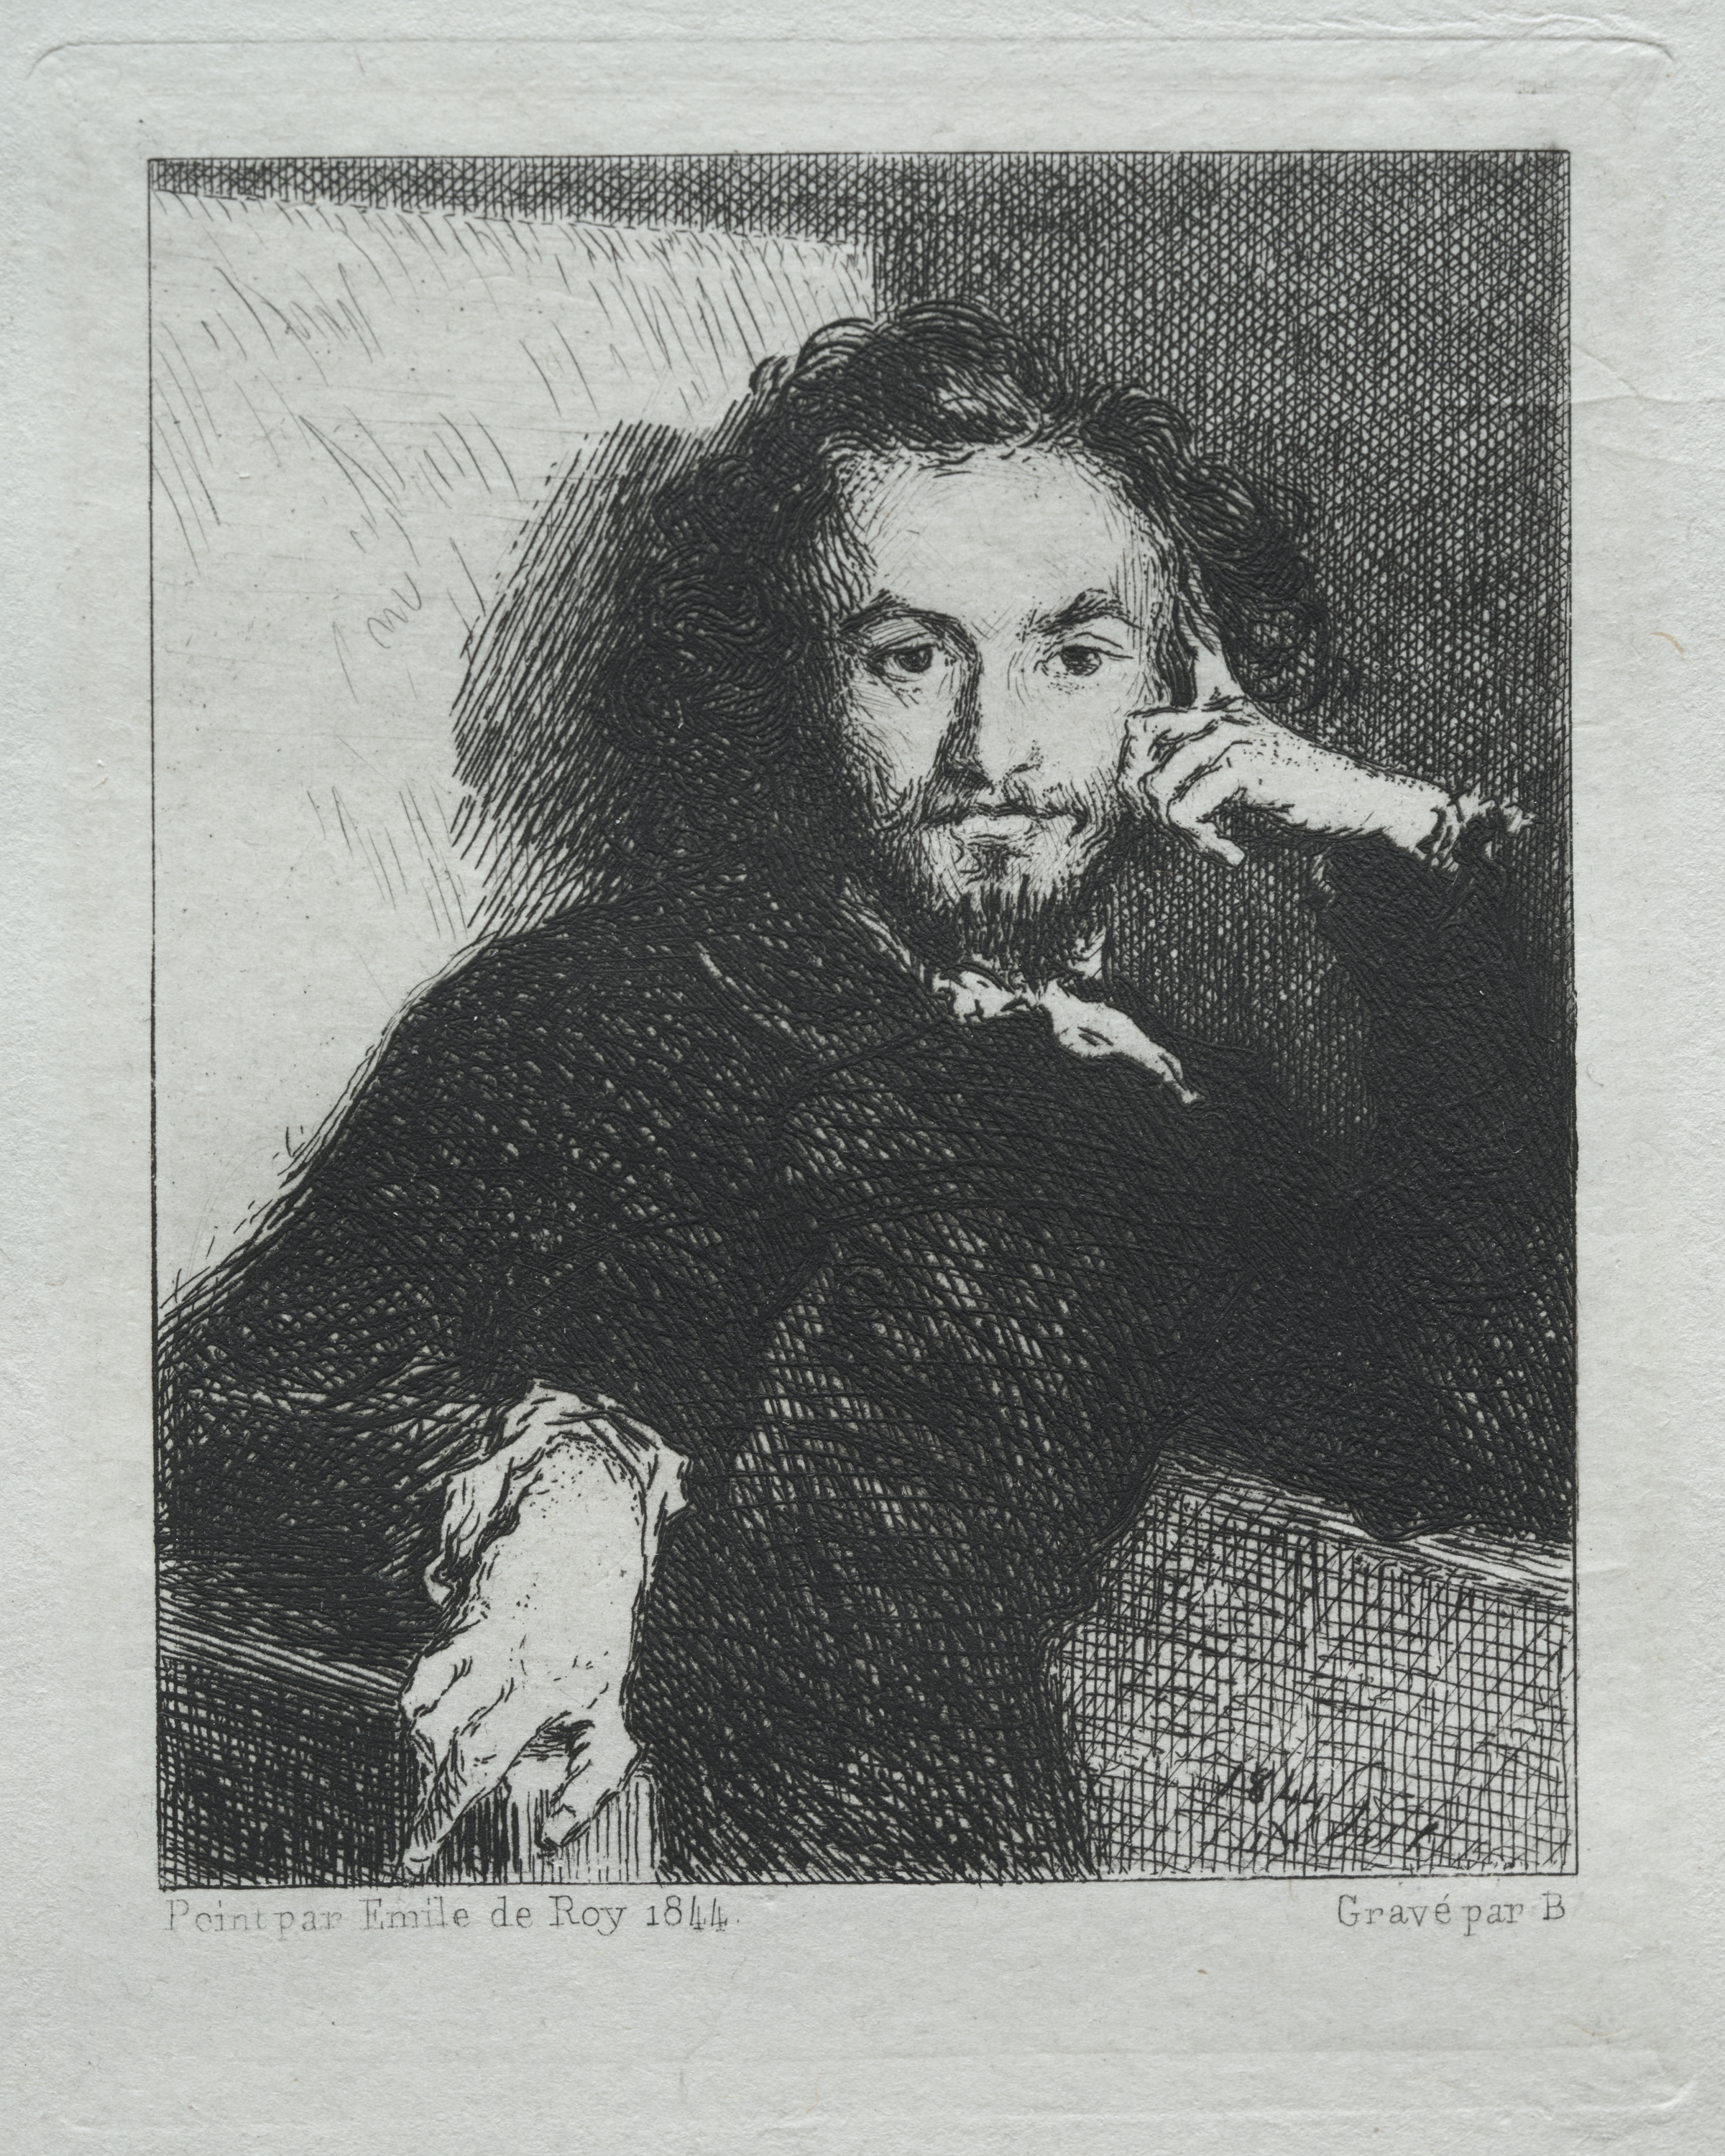 Baudelaire, after Emil de Roy